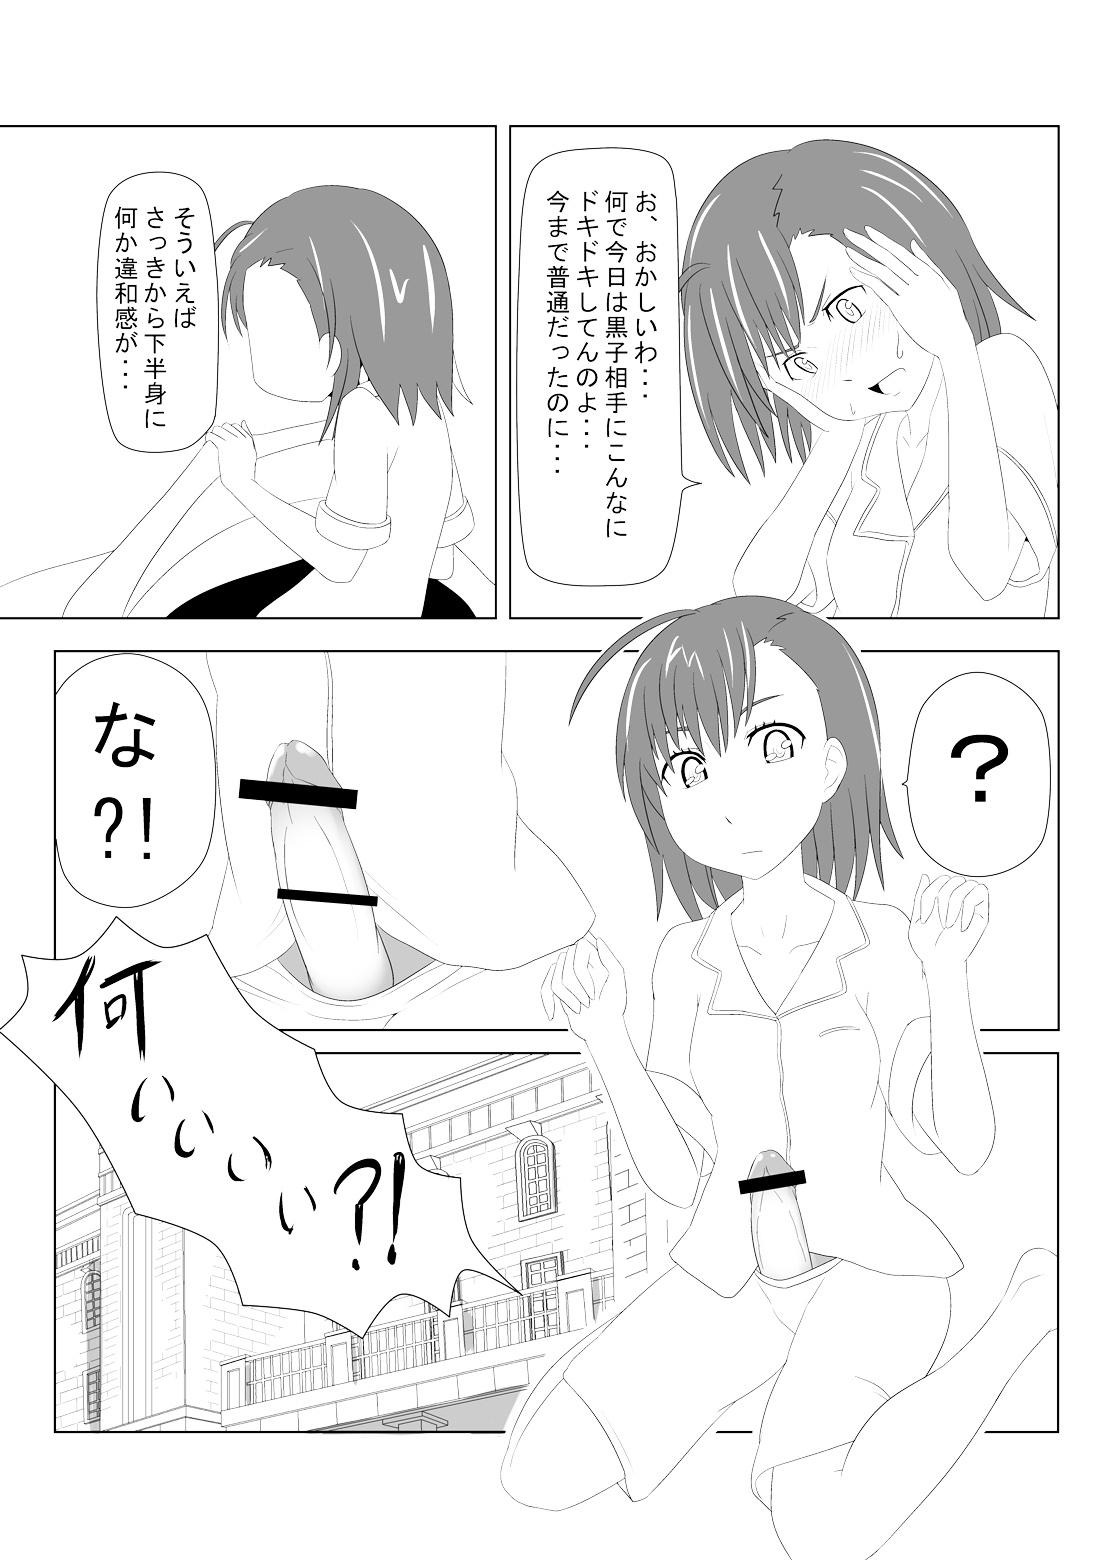 Blowjobs Toaru Fuuki iin no Manabi Yori - Toaru kagaku no railgun Guyonshemale - Page 7